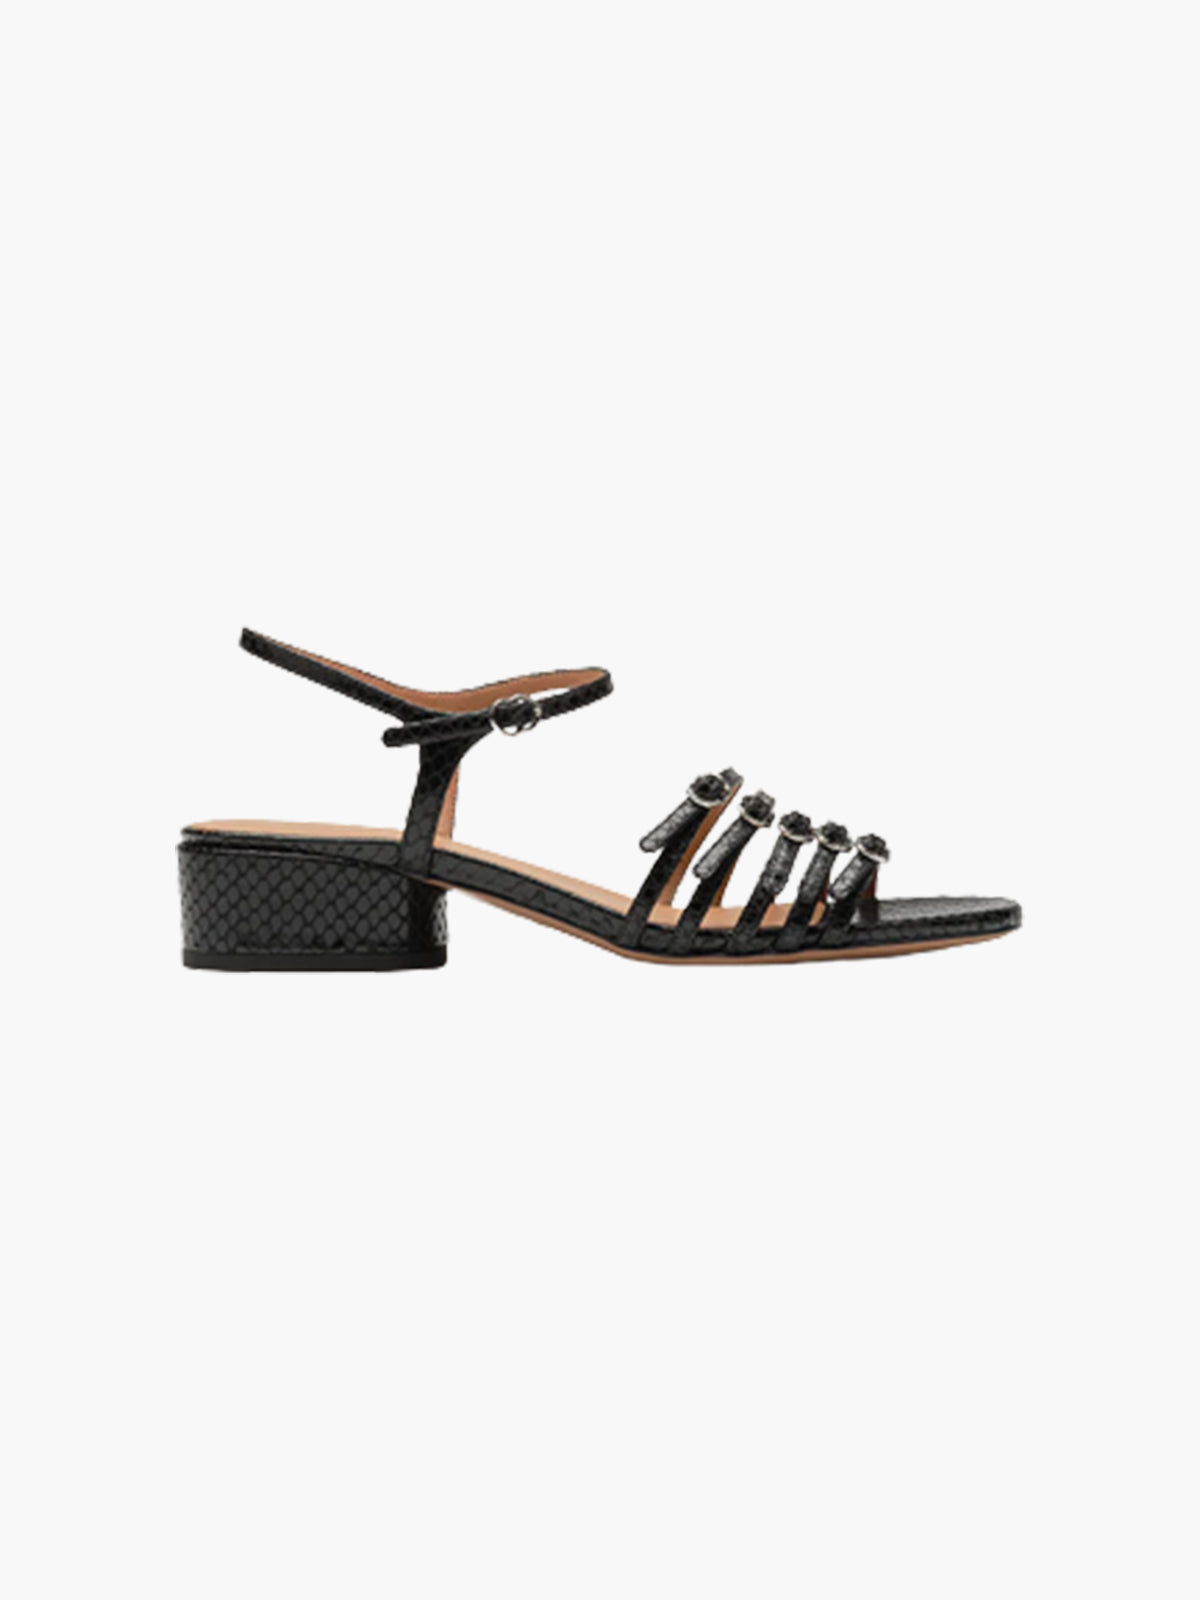 Belle De Jour Sandals | Black